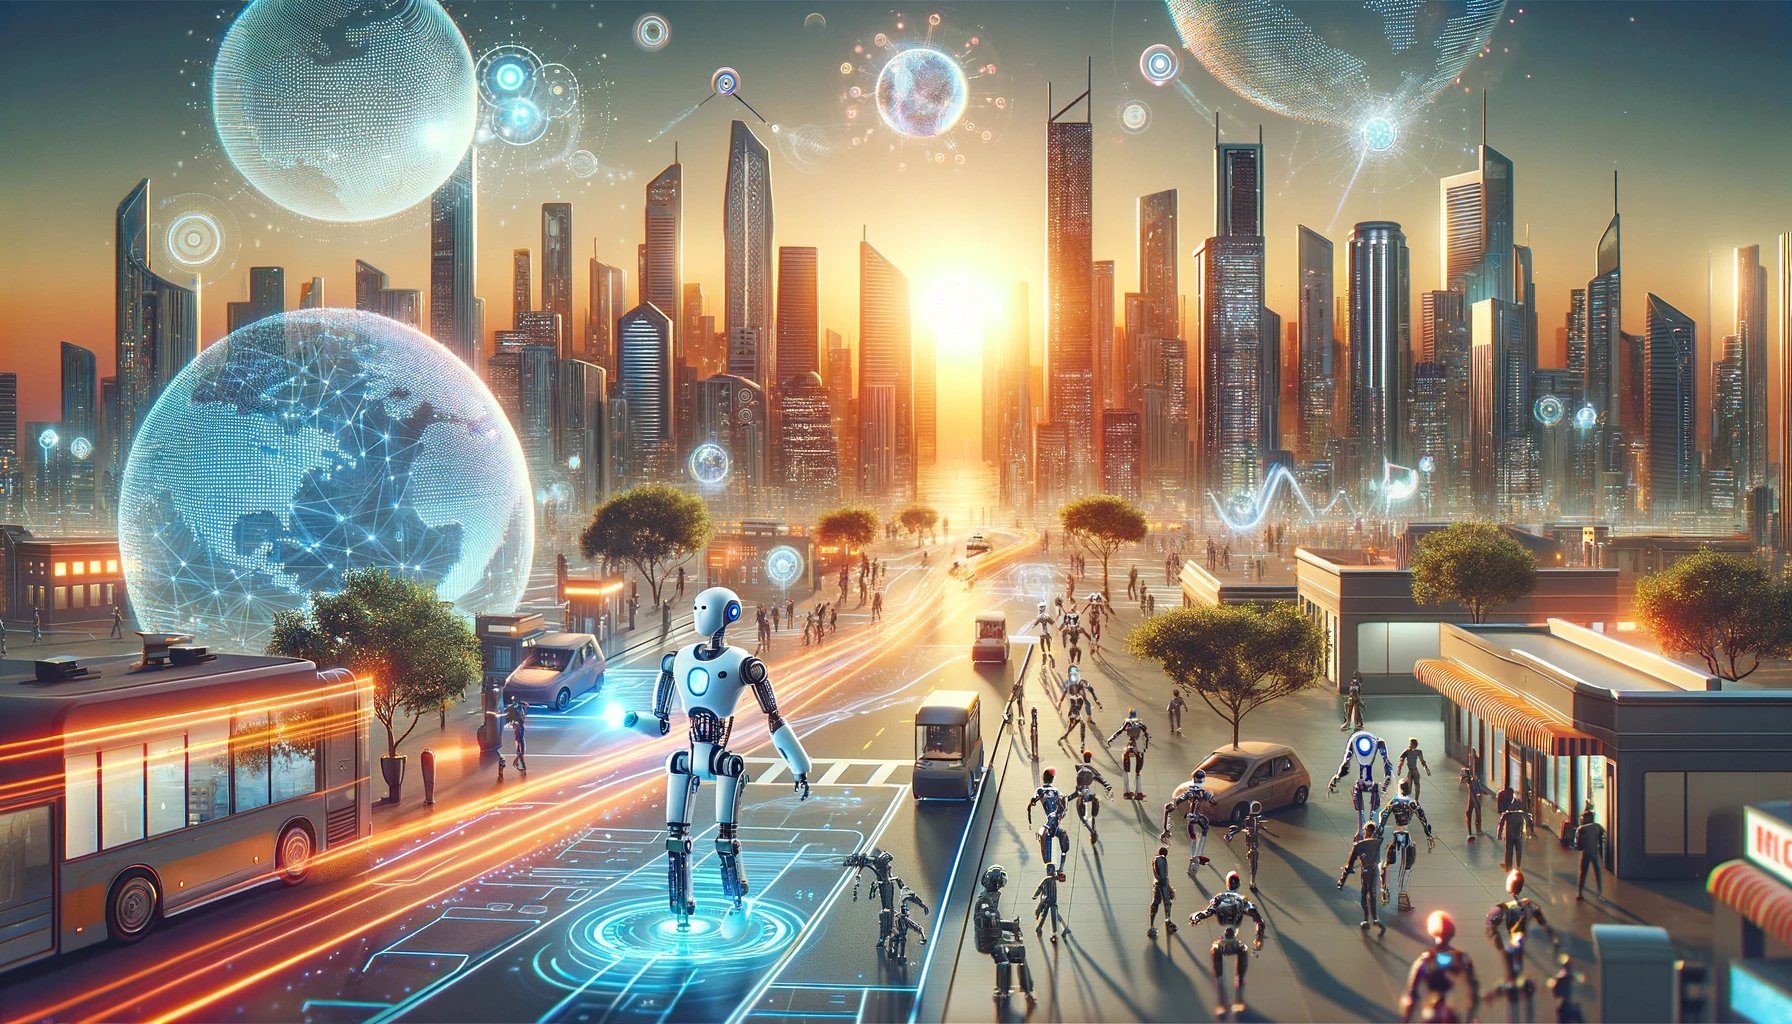 convivencia entre humanos y robots en el futuro